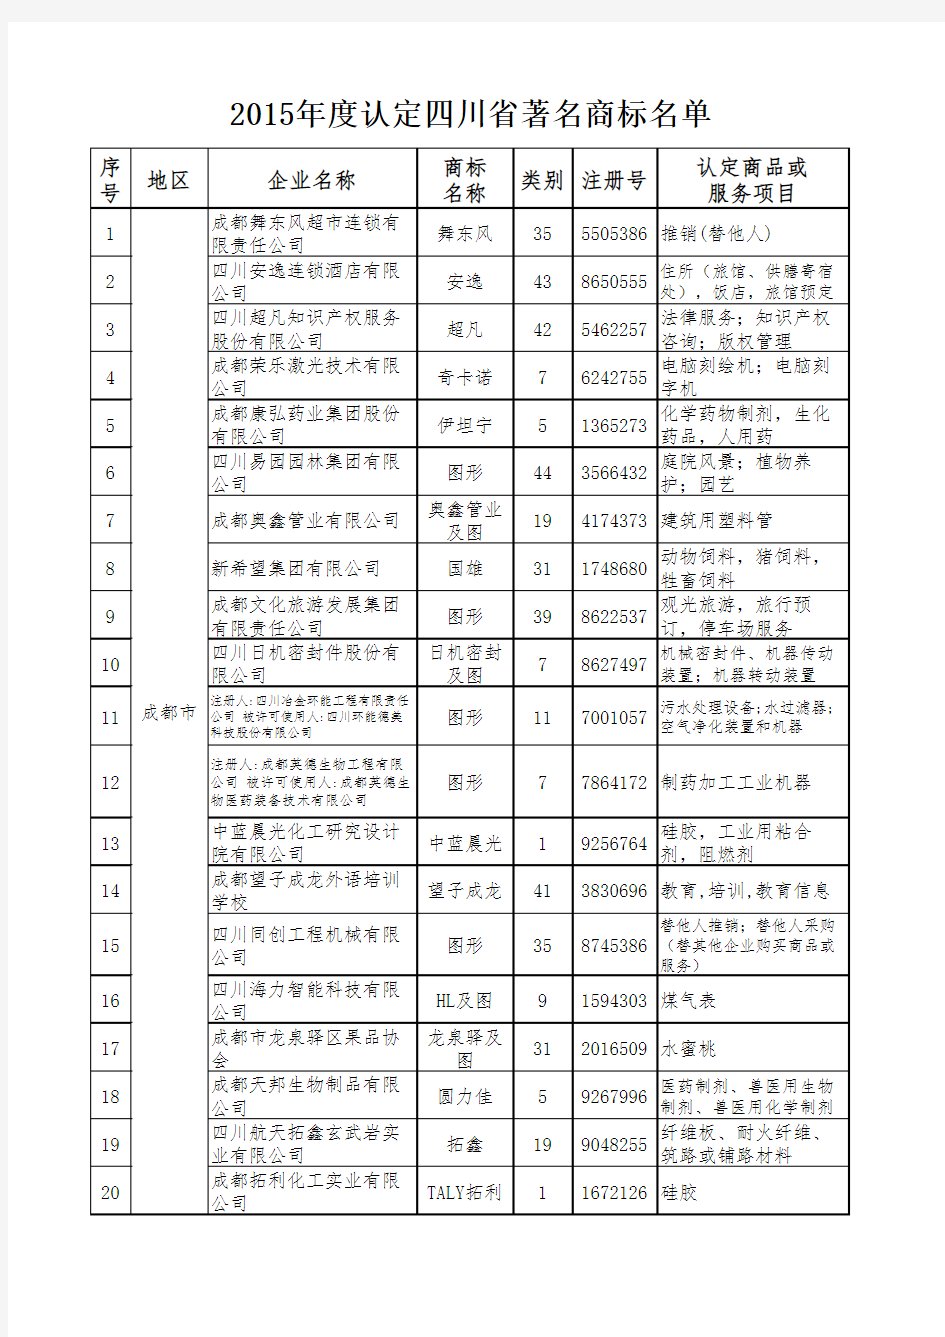 2015年度认定四川省著名商标名单